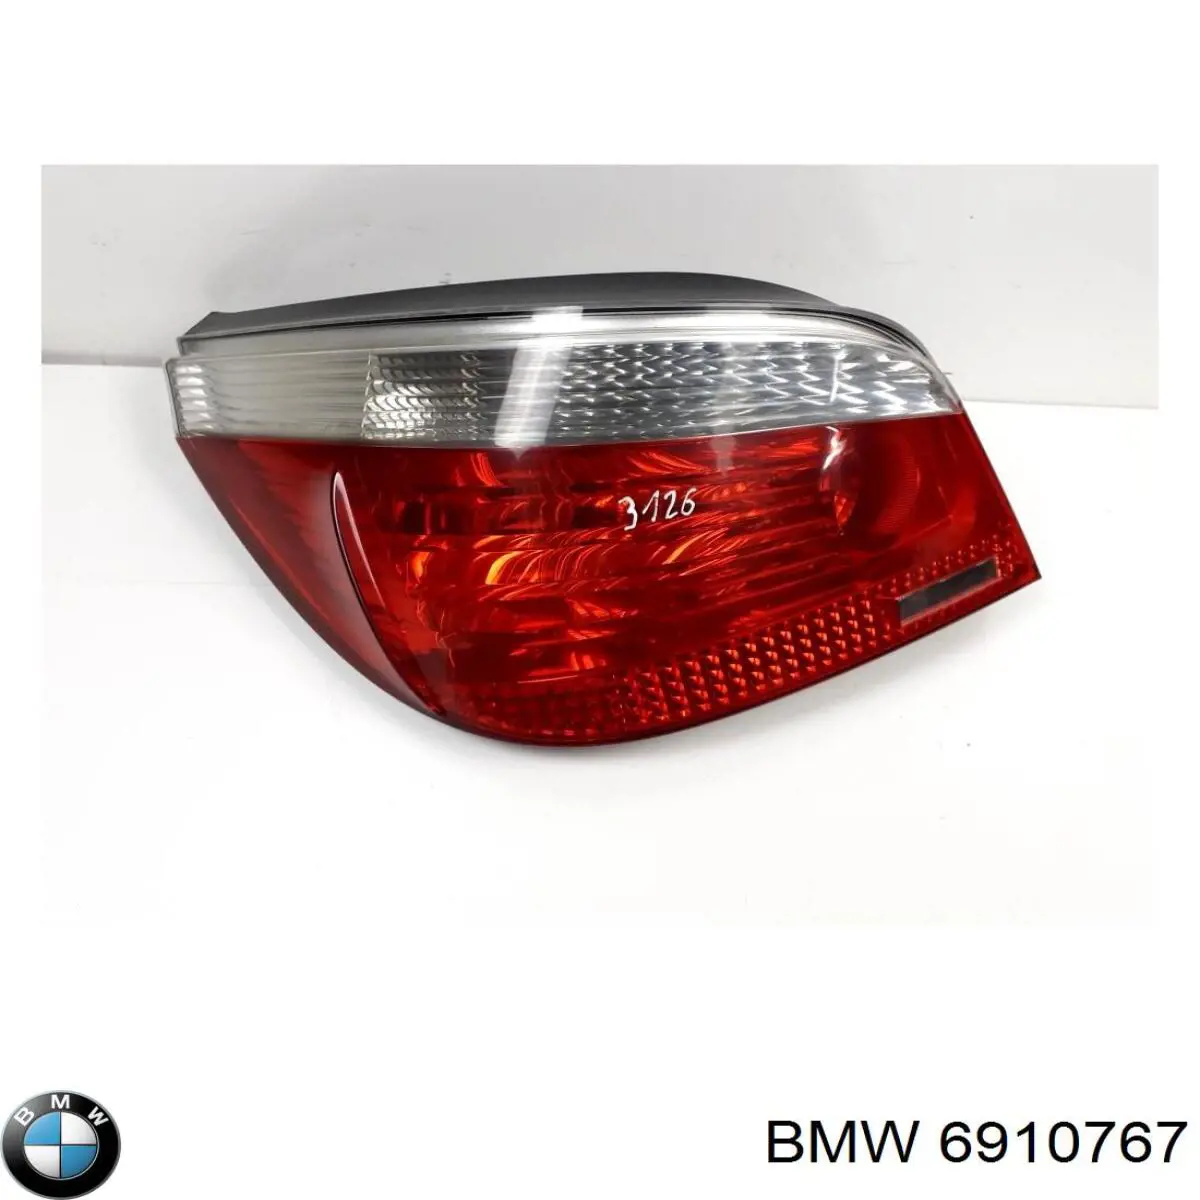 6910767 BMW lanterna traseira esquerda externa